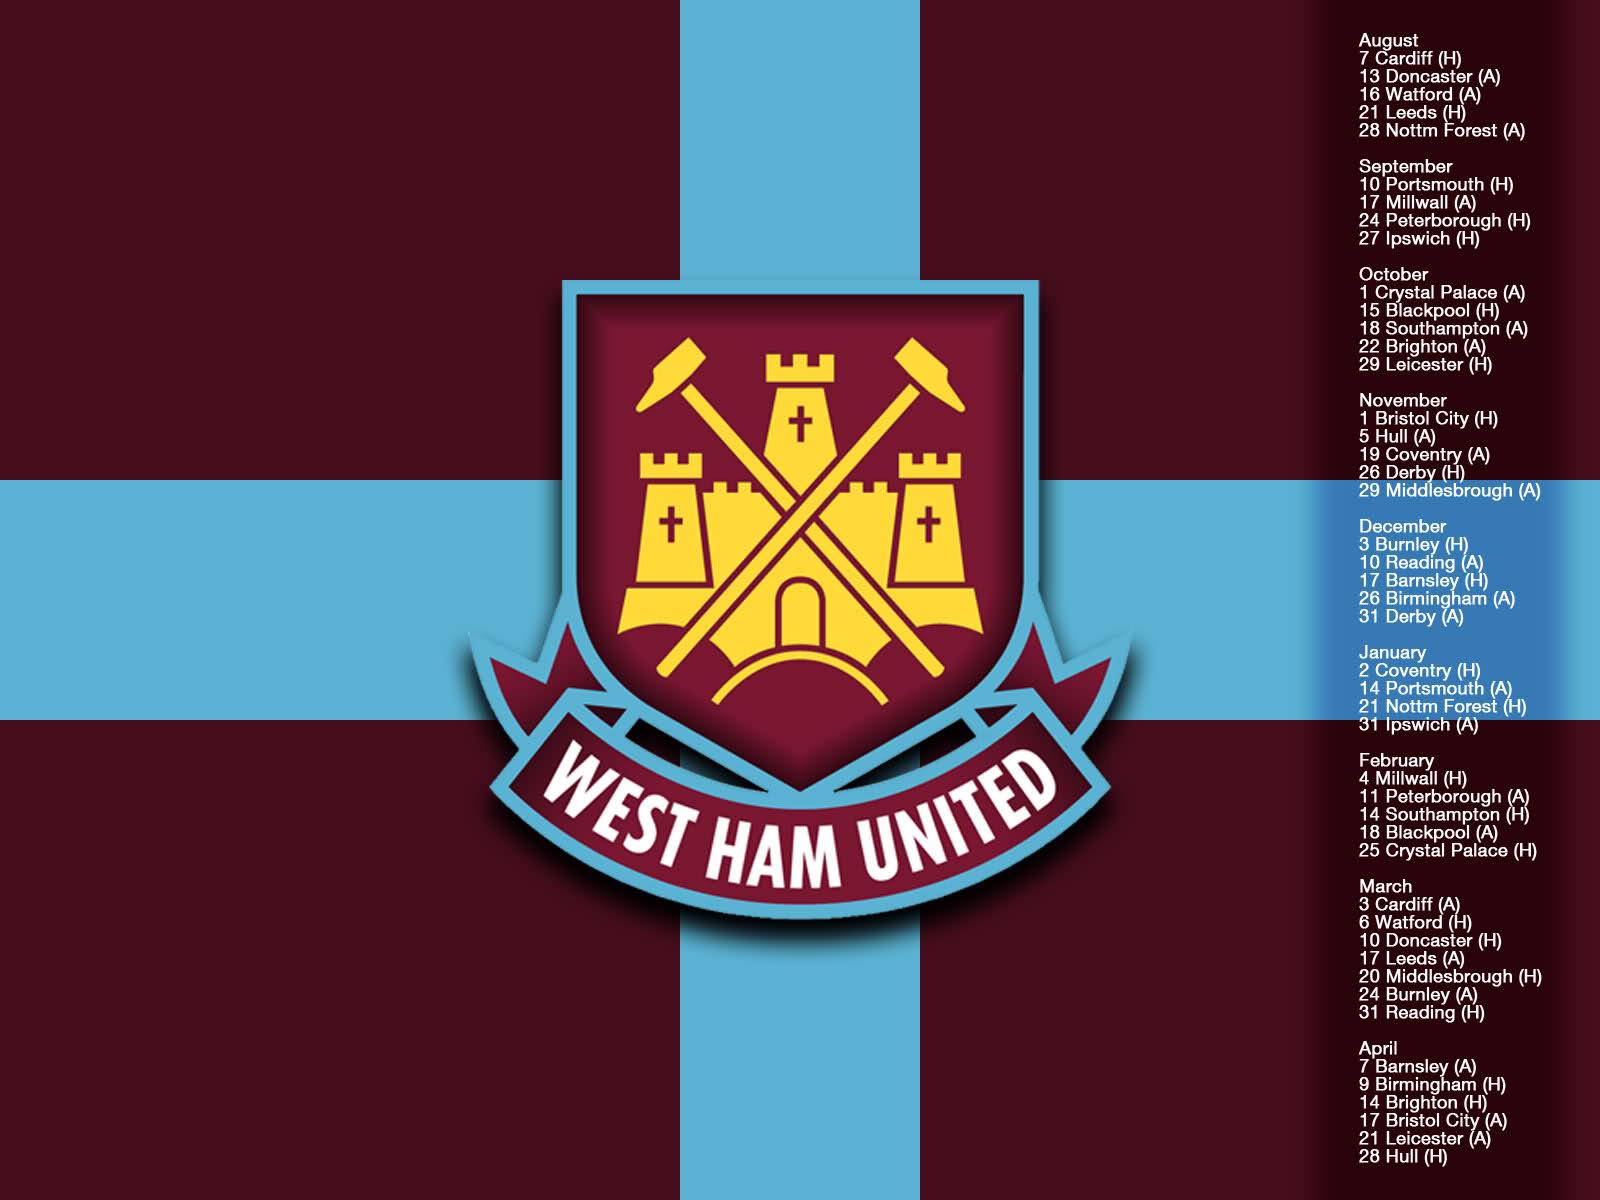 Westham United